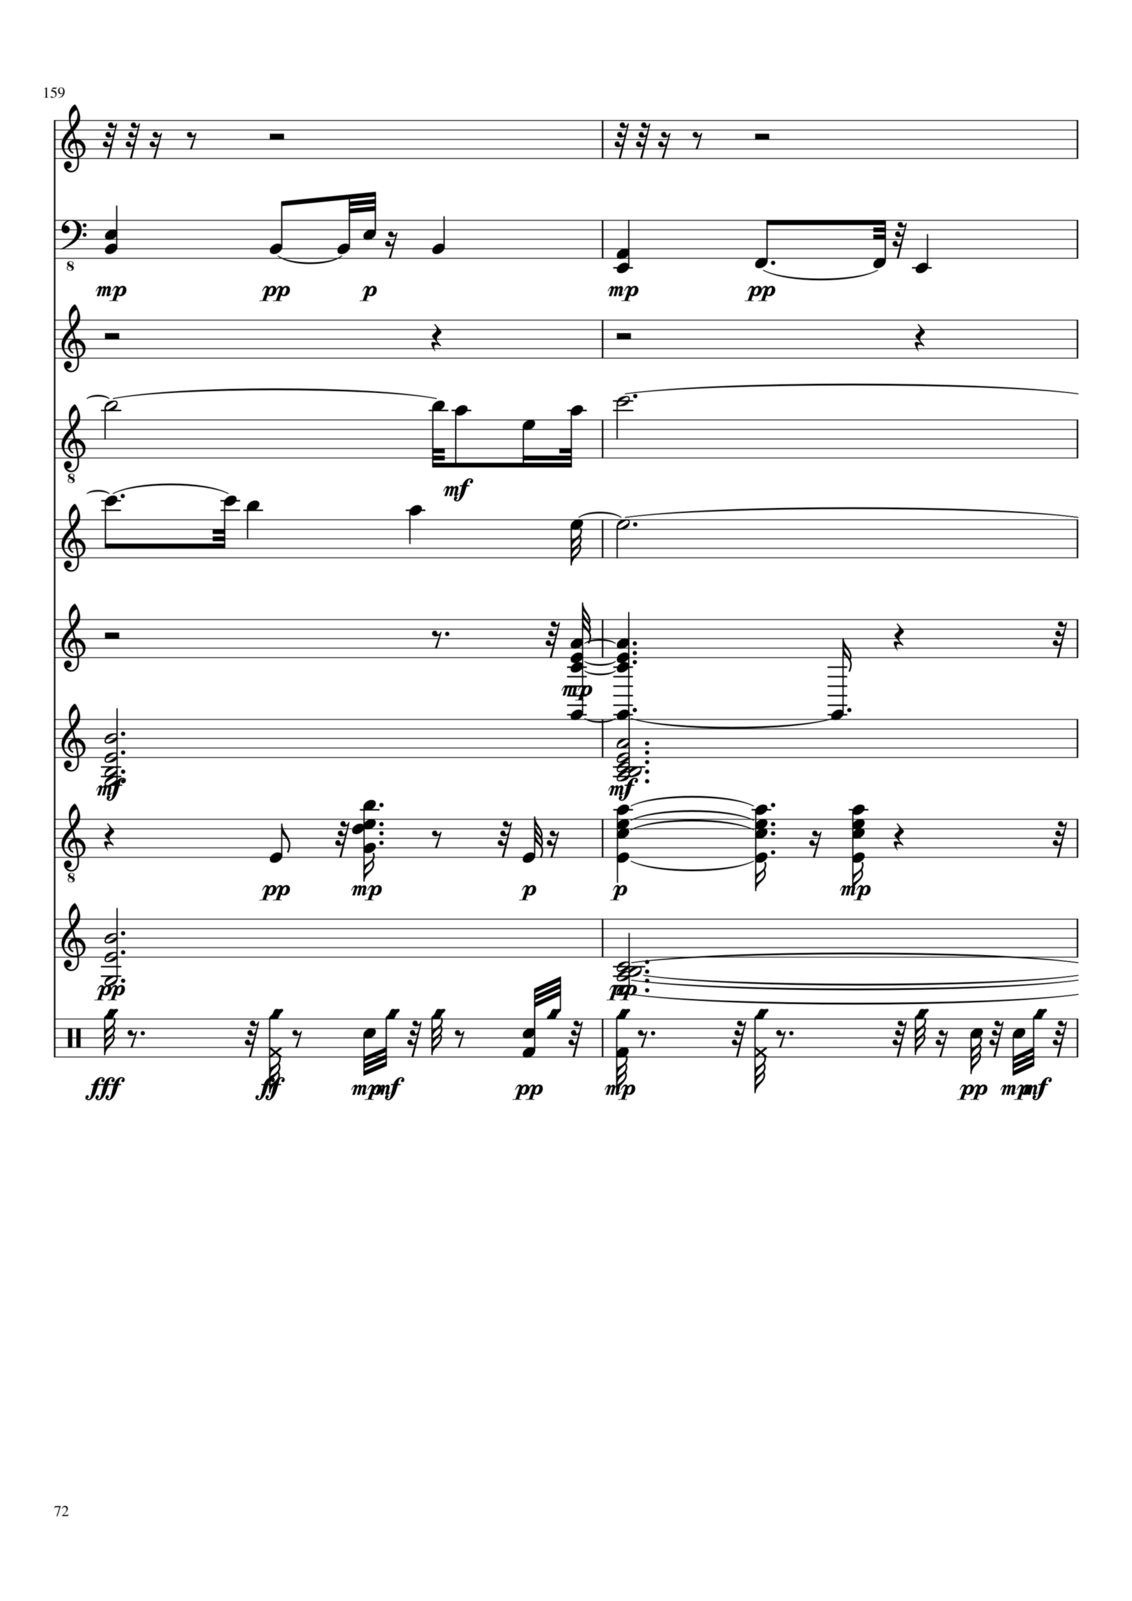 Utro polinyi slide, Image 132